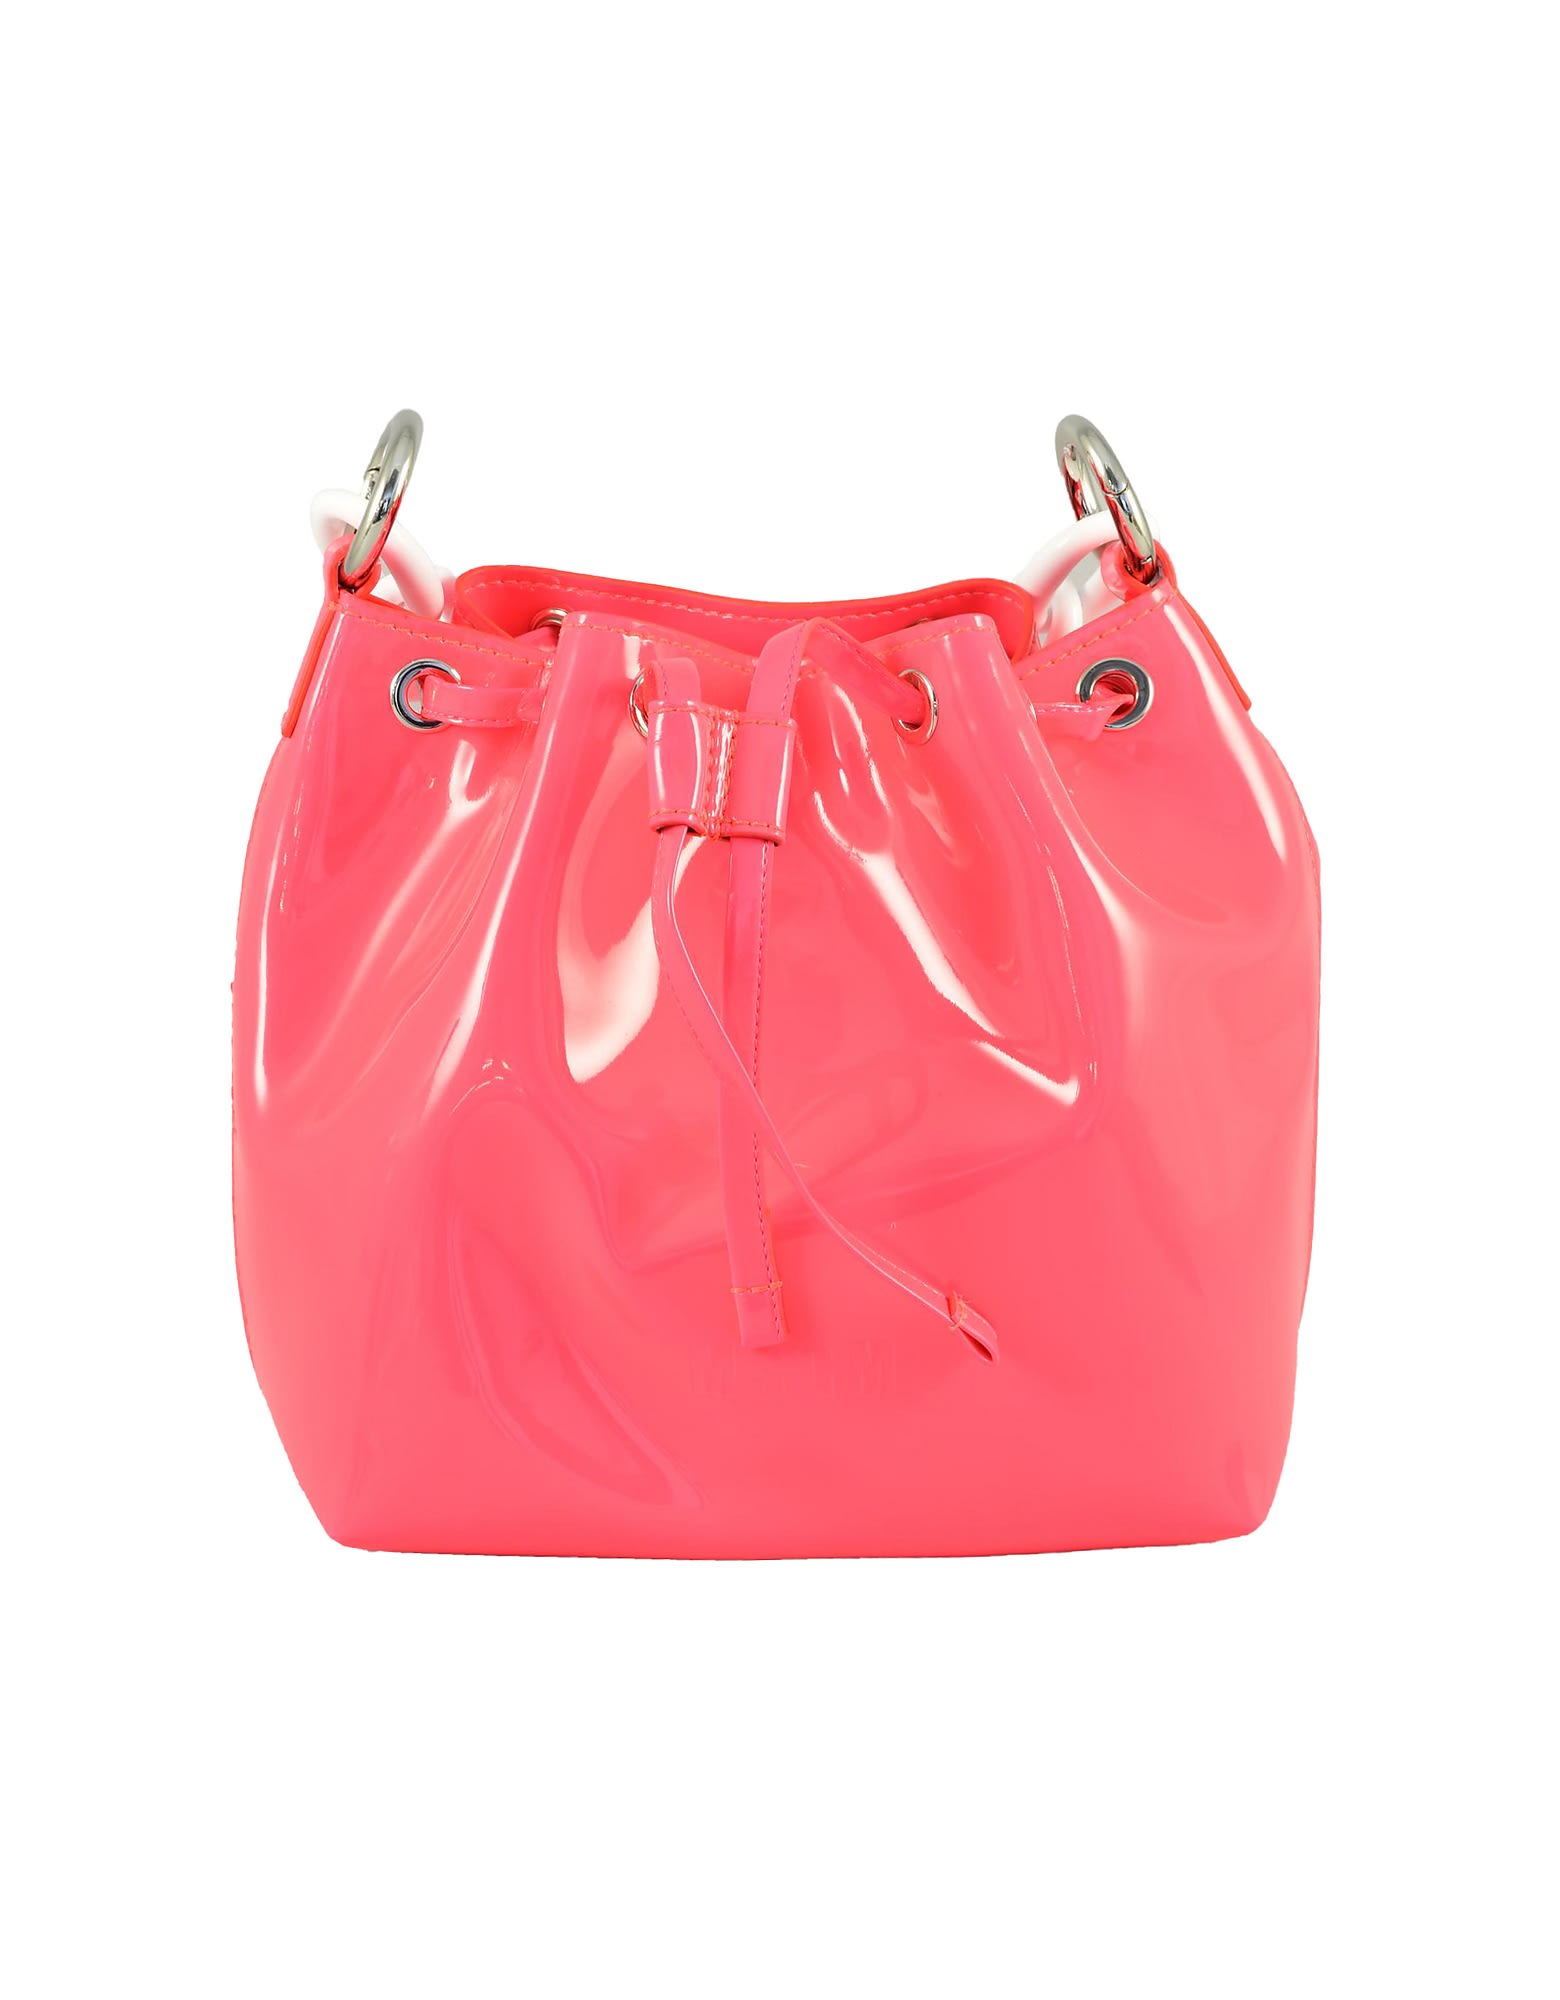 Msgm Womens Fuchsia Handbag